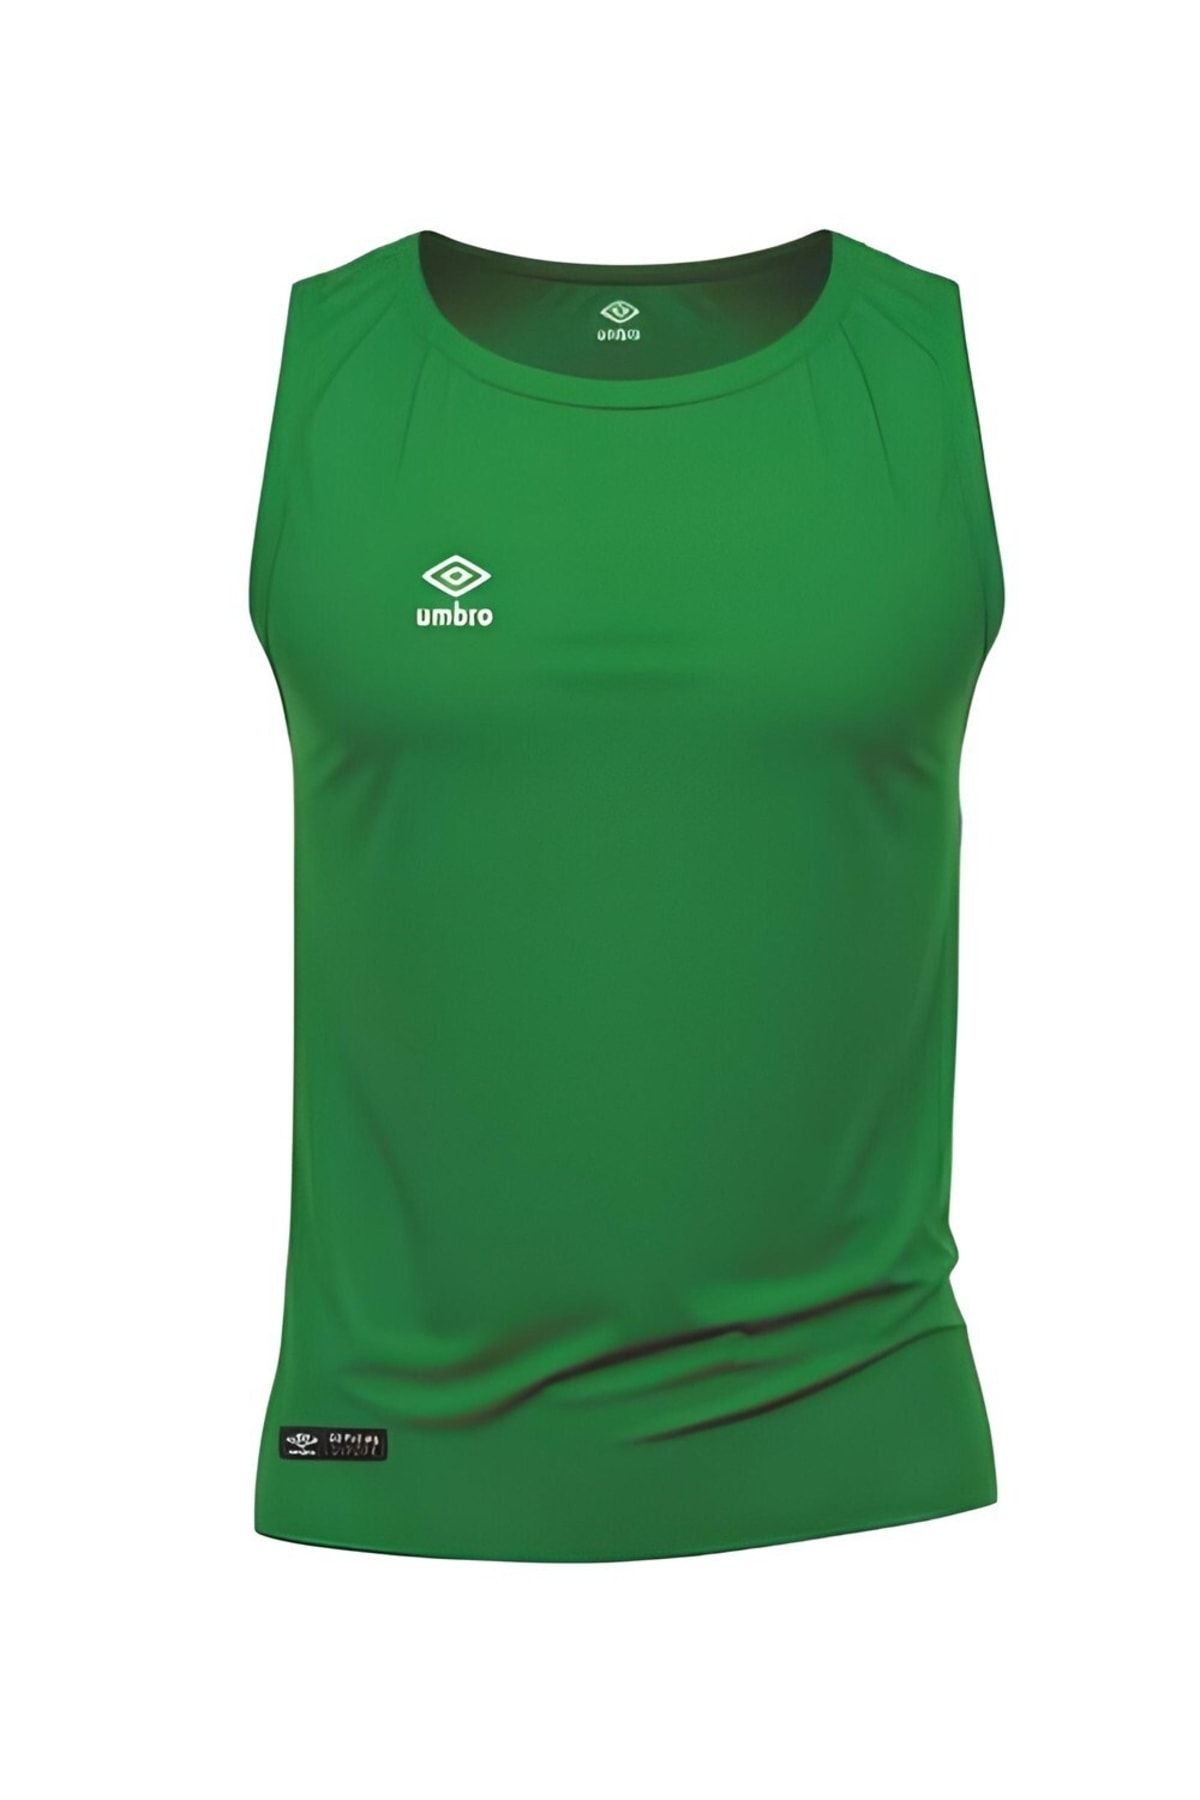 Umbro Dry Top - Erkek Yeşil Spor Atlet - Tf0059